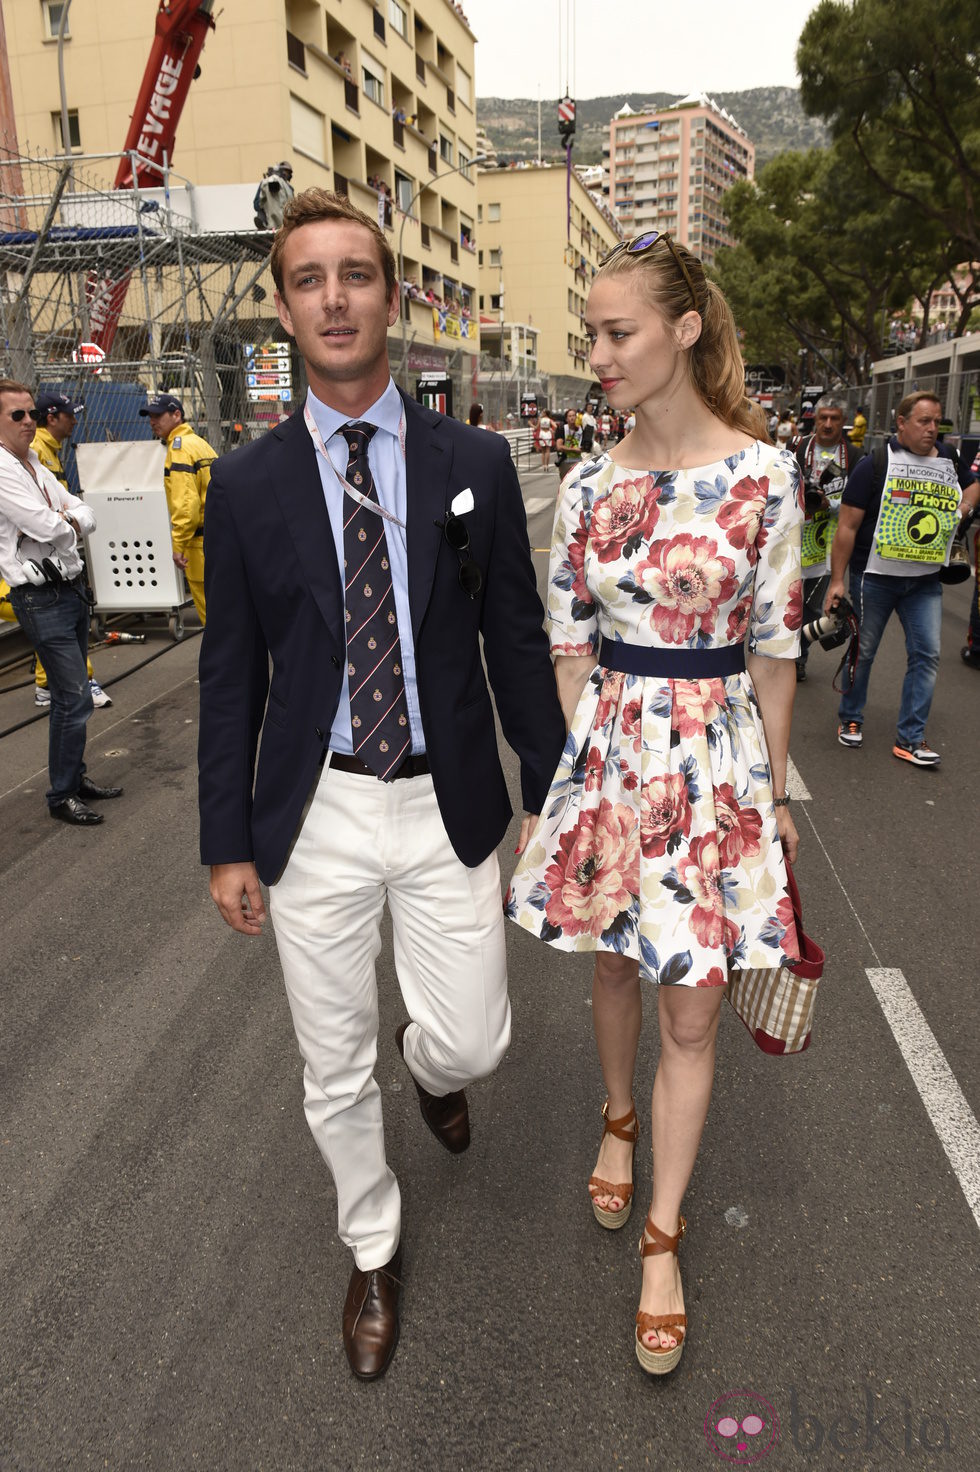 Pierre Casiraghi y Beatrice Borromeo en el Gran Premio de Mónaco 2014